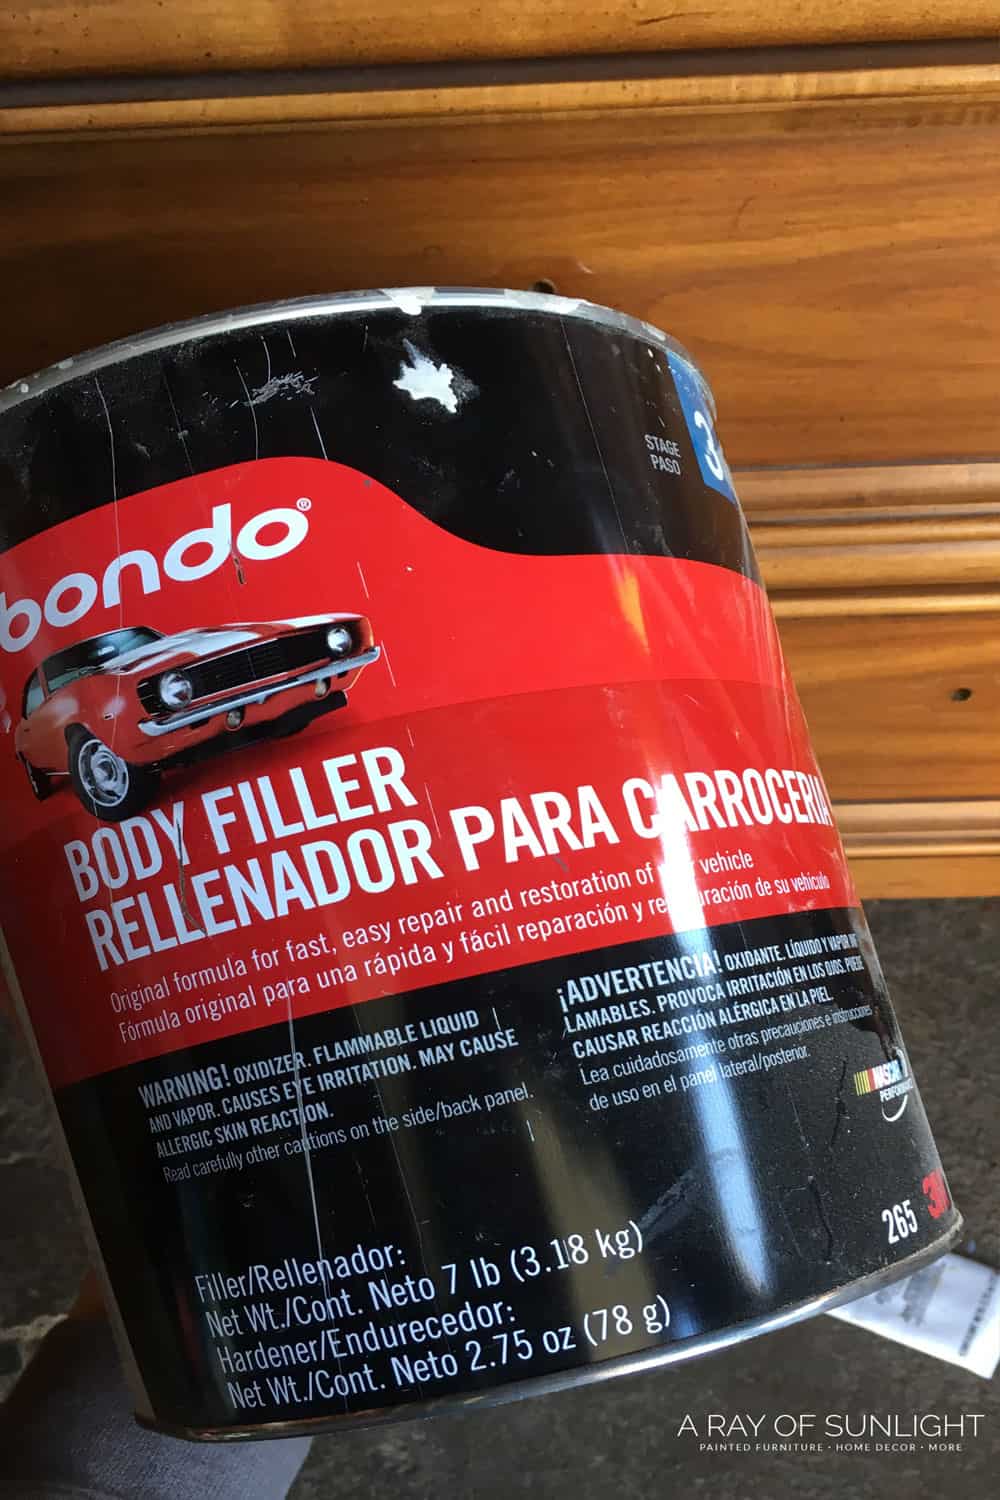 can of Bondo body filler